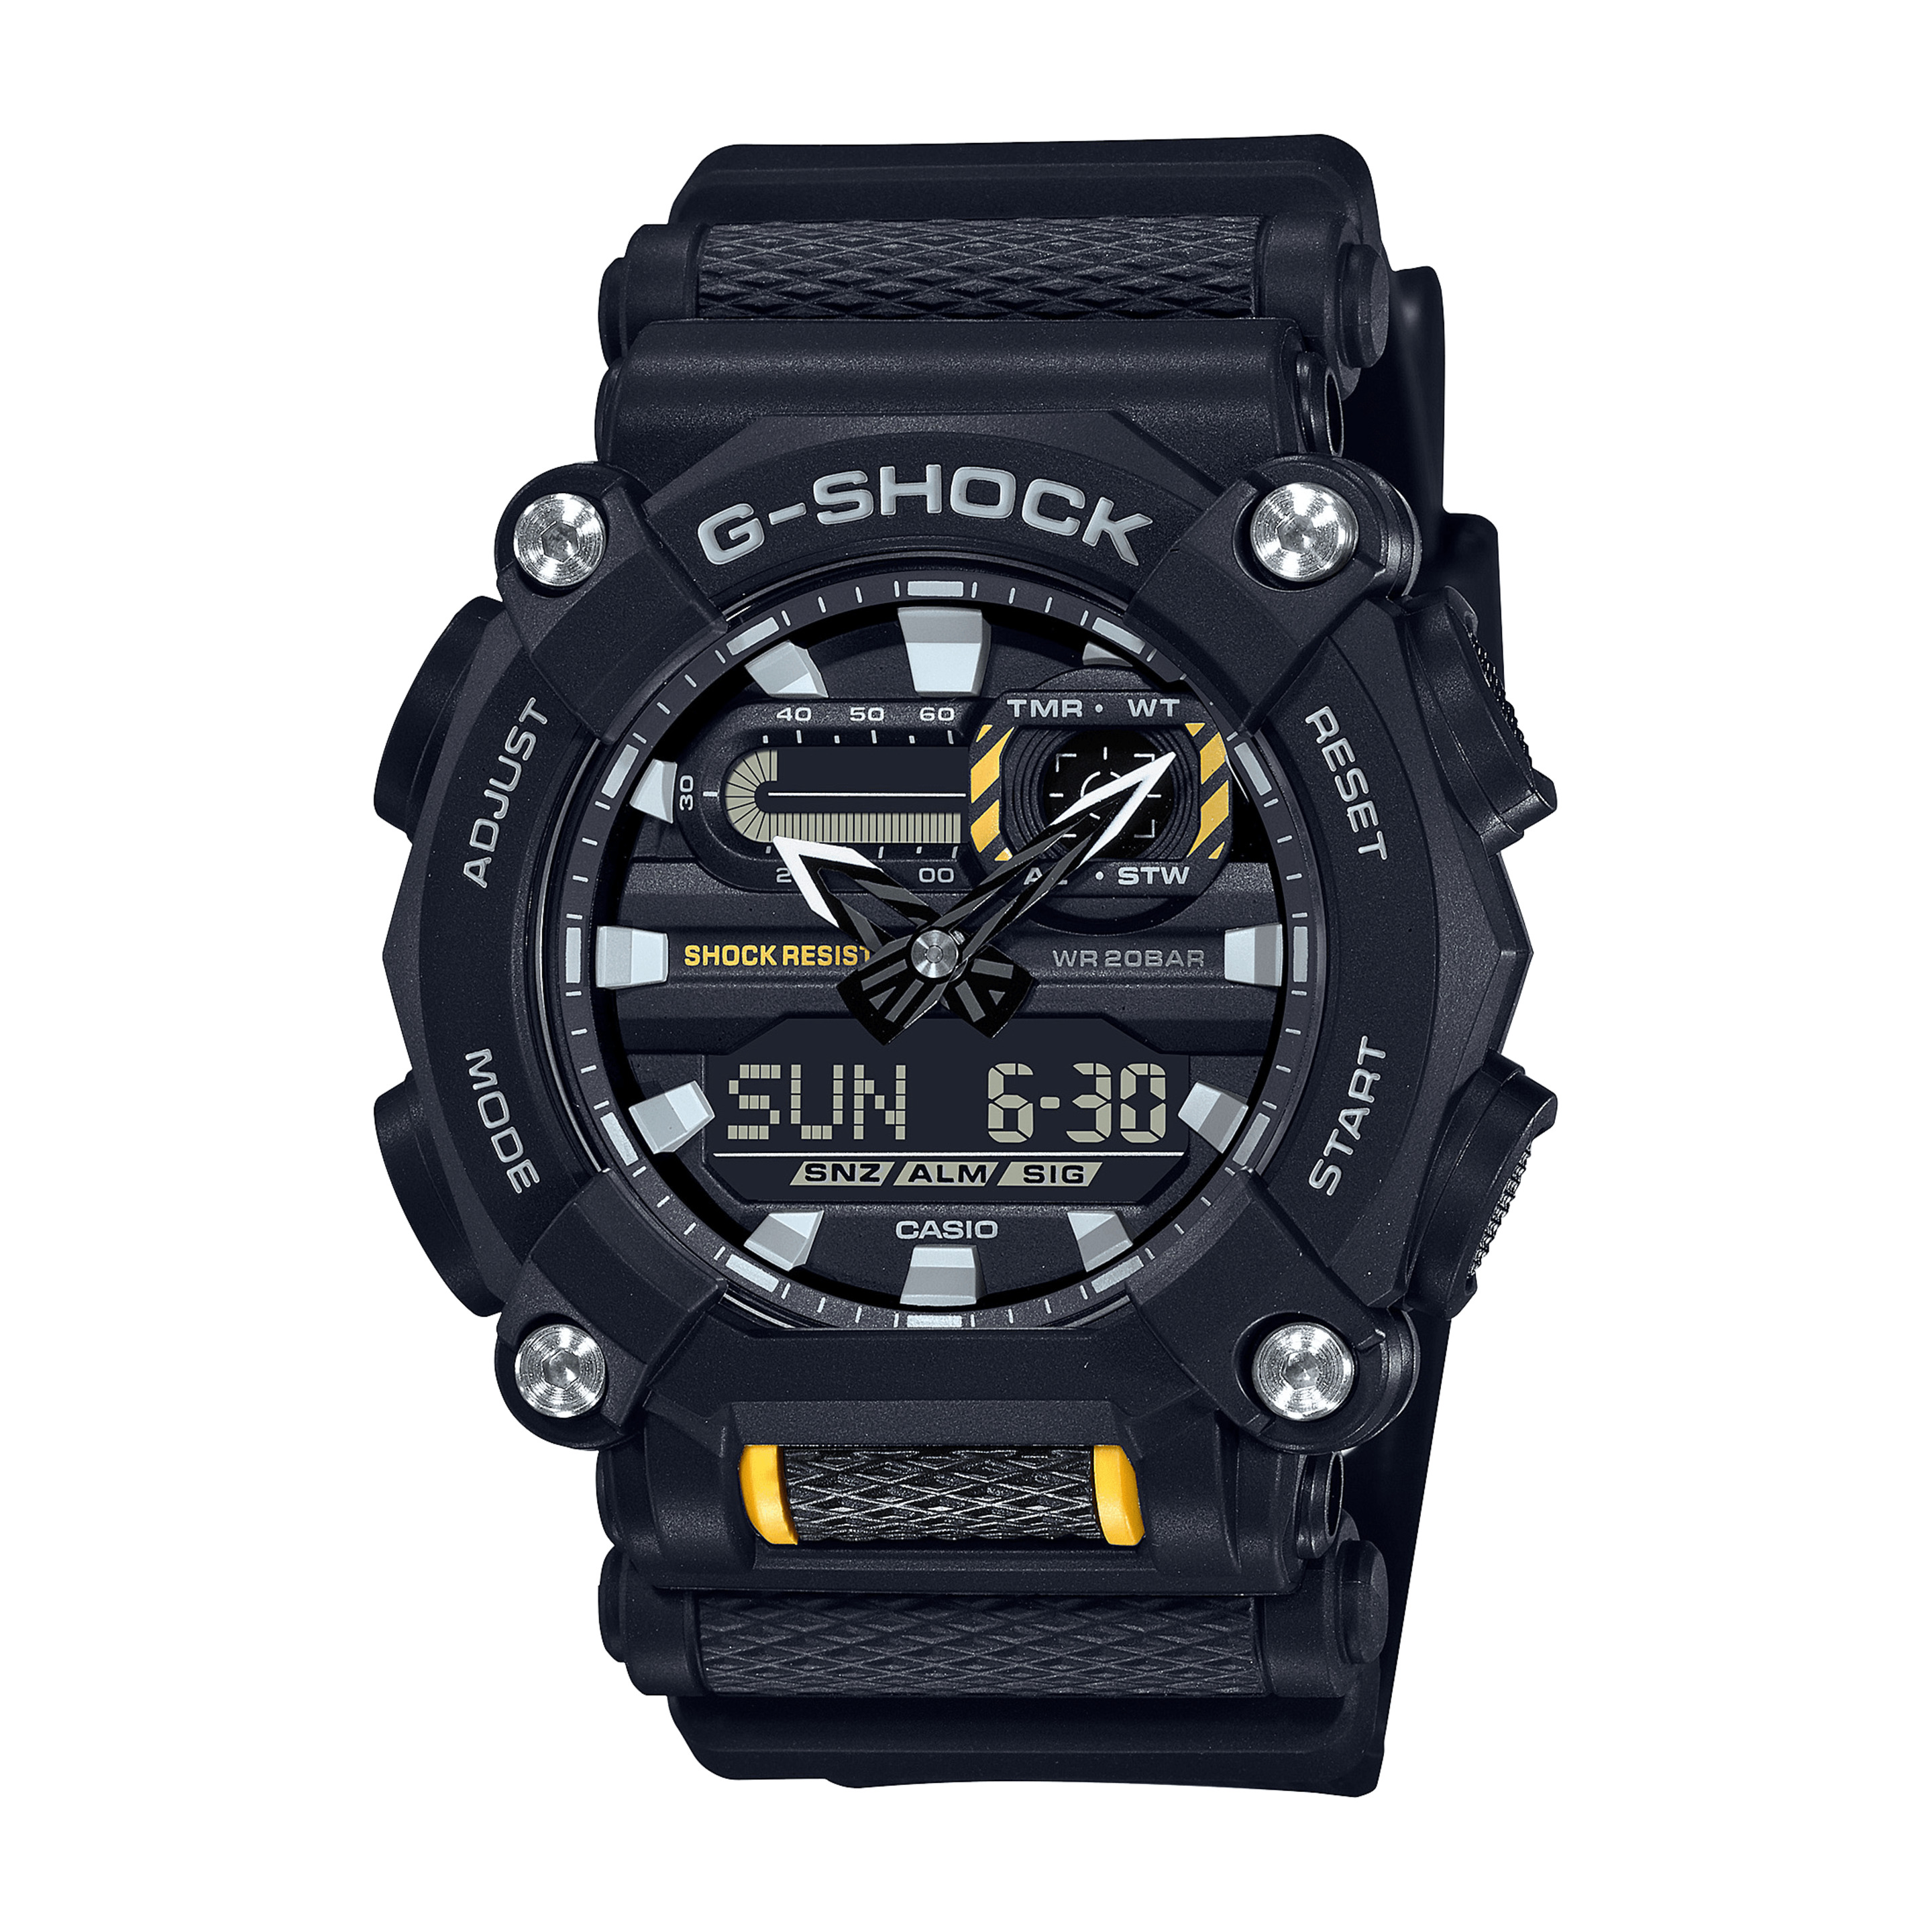 Reloj G-shock Ga-900-1aer - negro - 